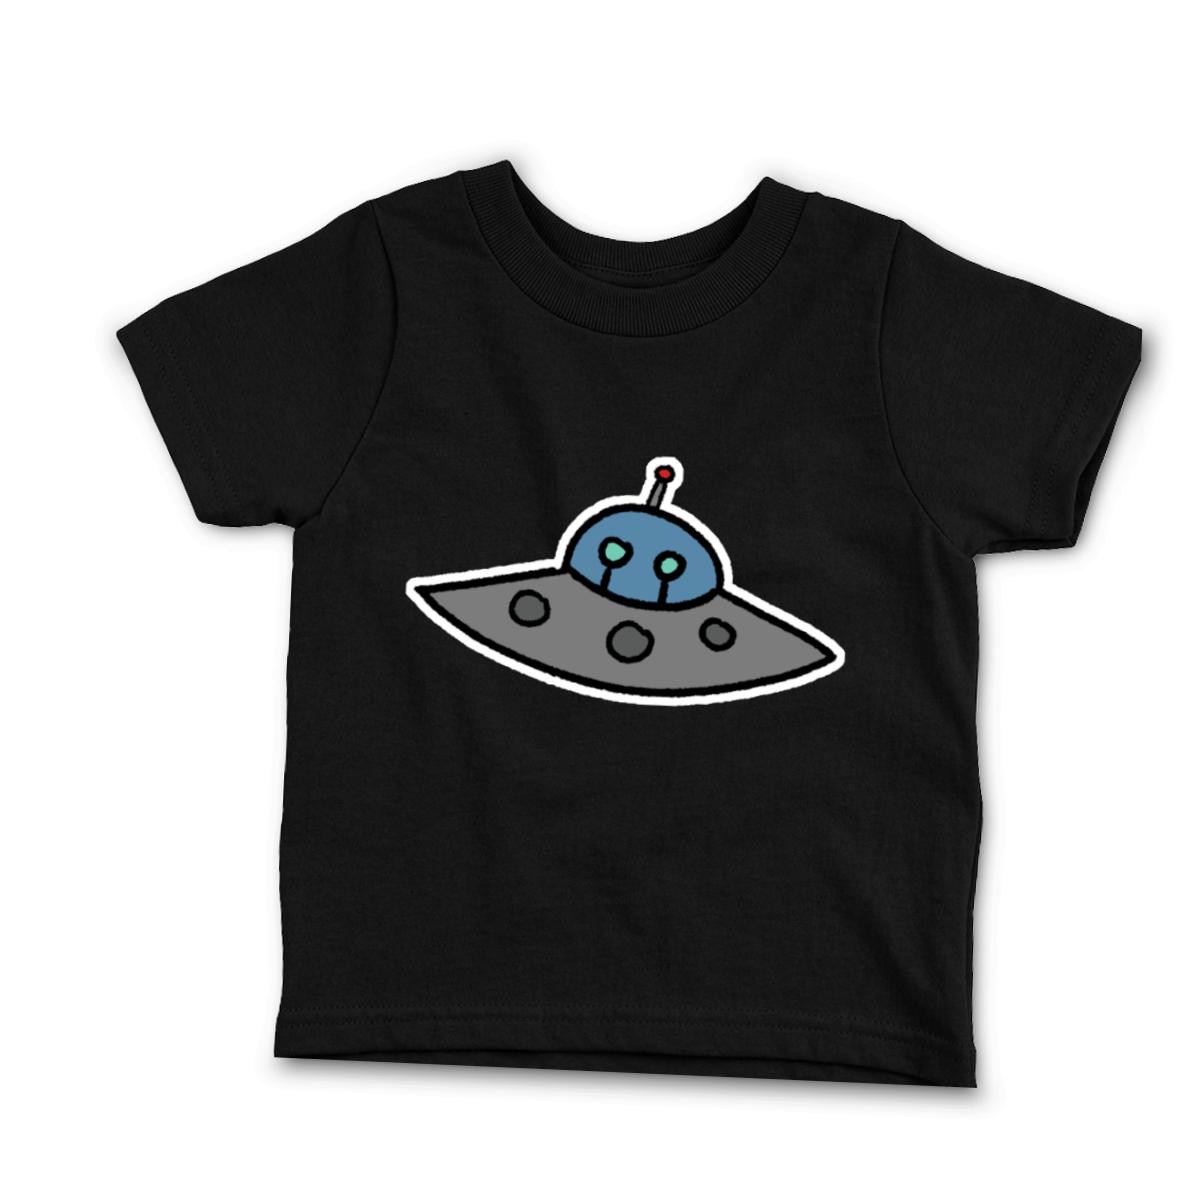 Flying Saucer Infant Tee 18M black